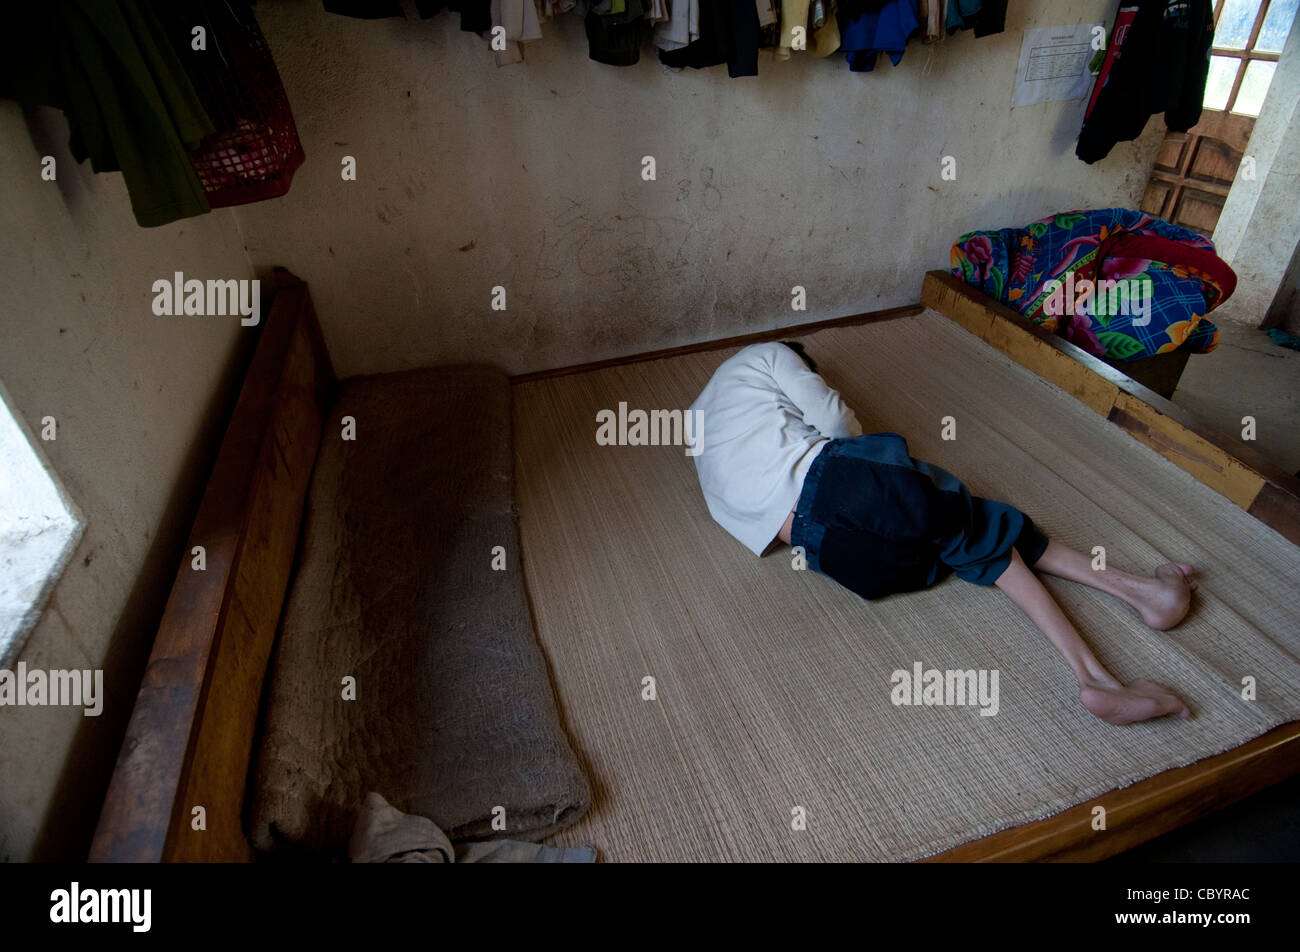 La paralysie cérébrale (CP), patient adolescent, sur un lit dans la chambre du Vietnam. Banque D'Images